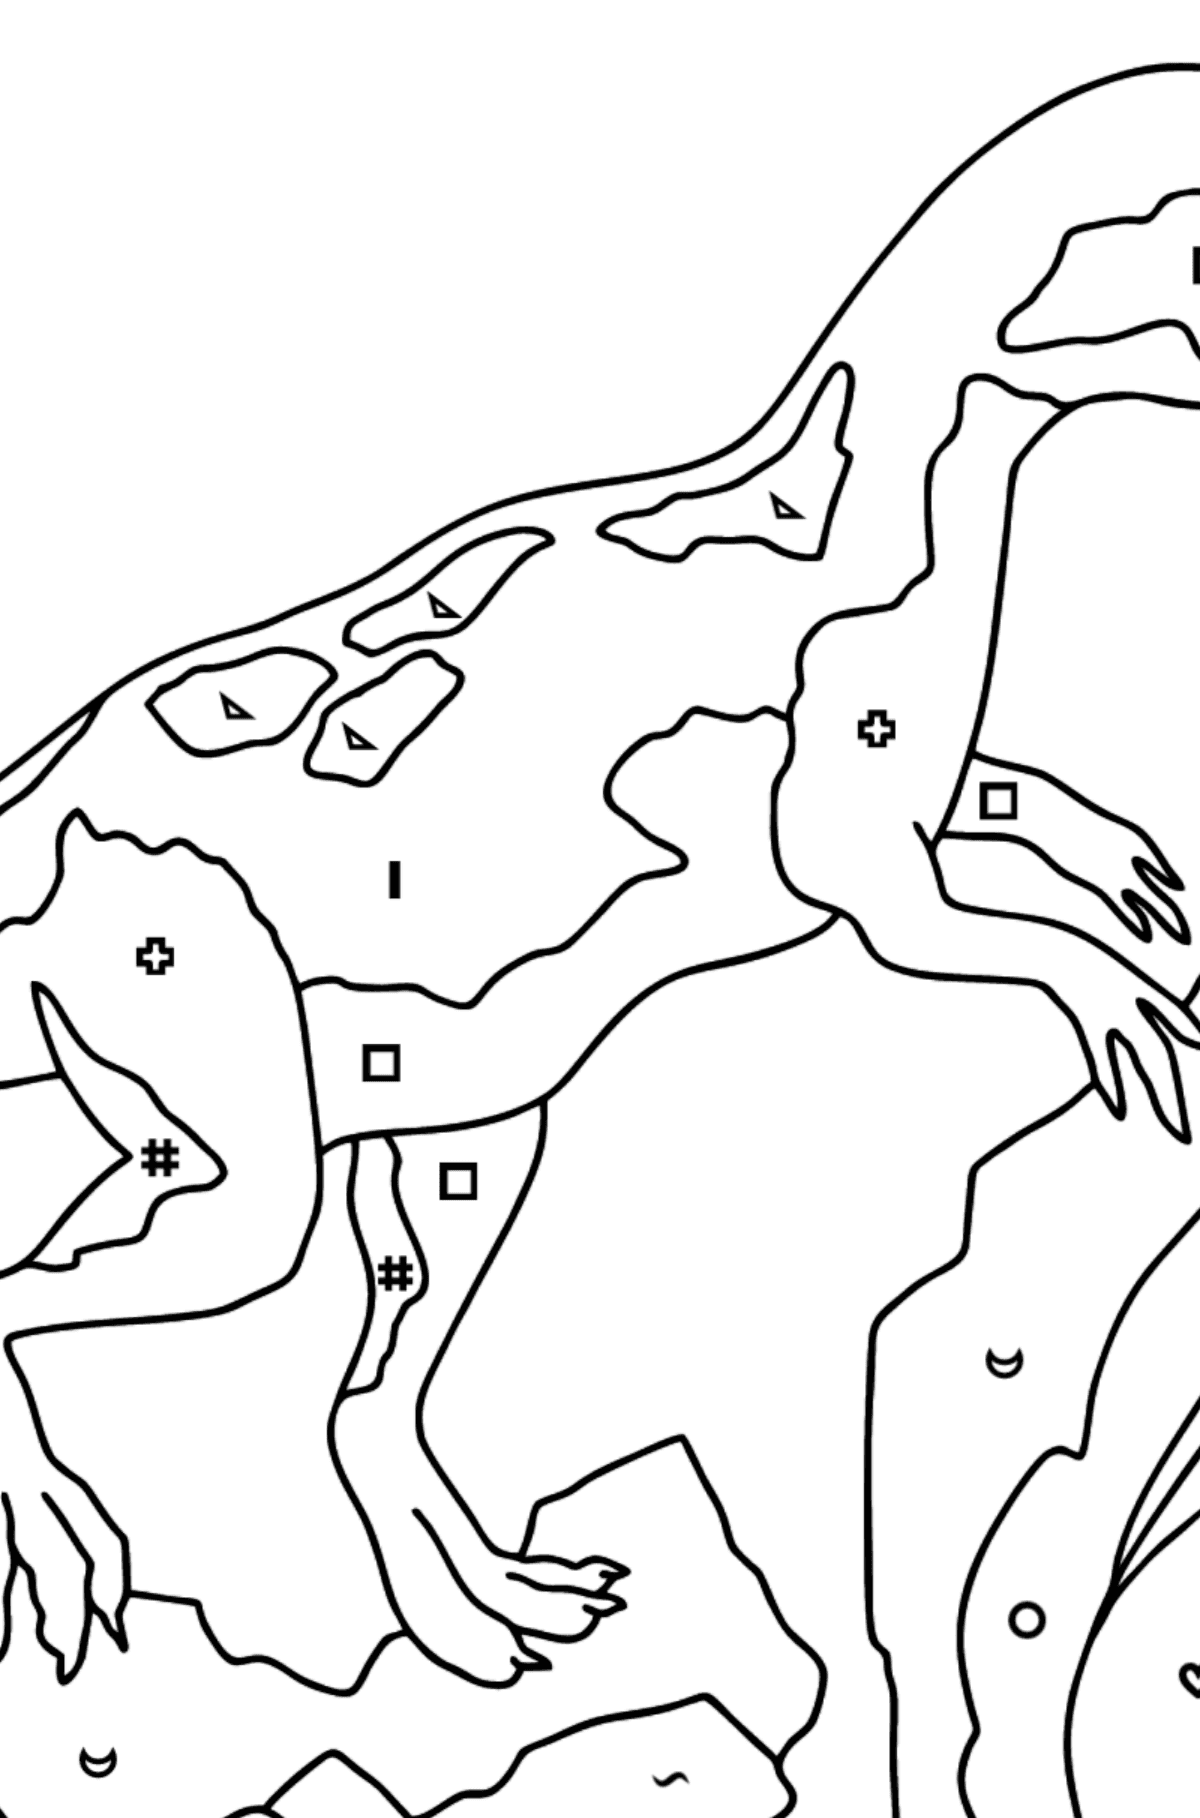 Раскраска динозавров юрского периода (сложно) - Полезная картинка для Детей